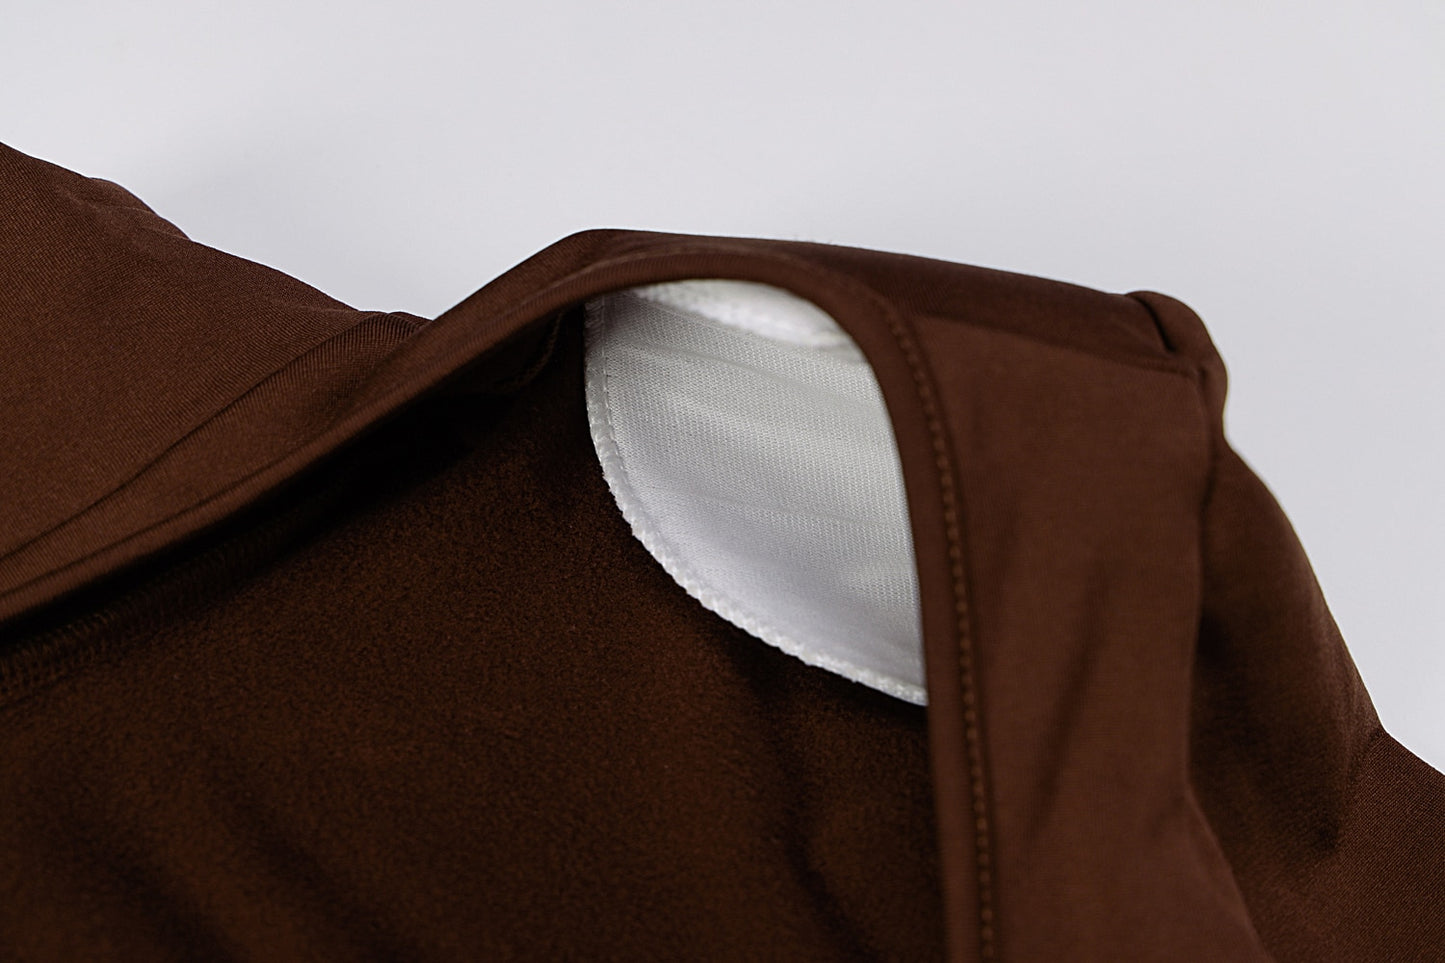 Backless Turtleneck Bodysuit with Shoulder pads - 6 colors